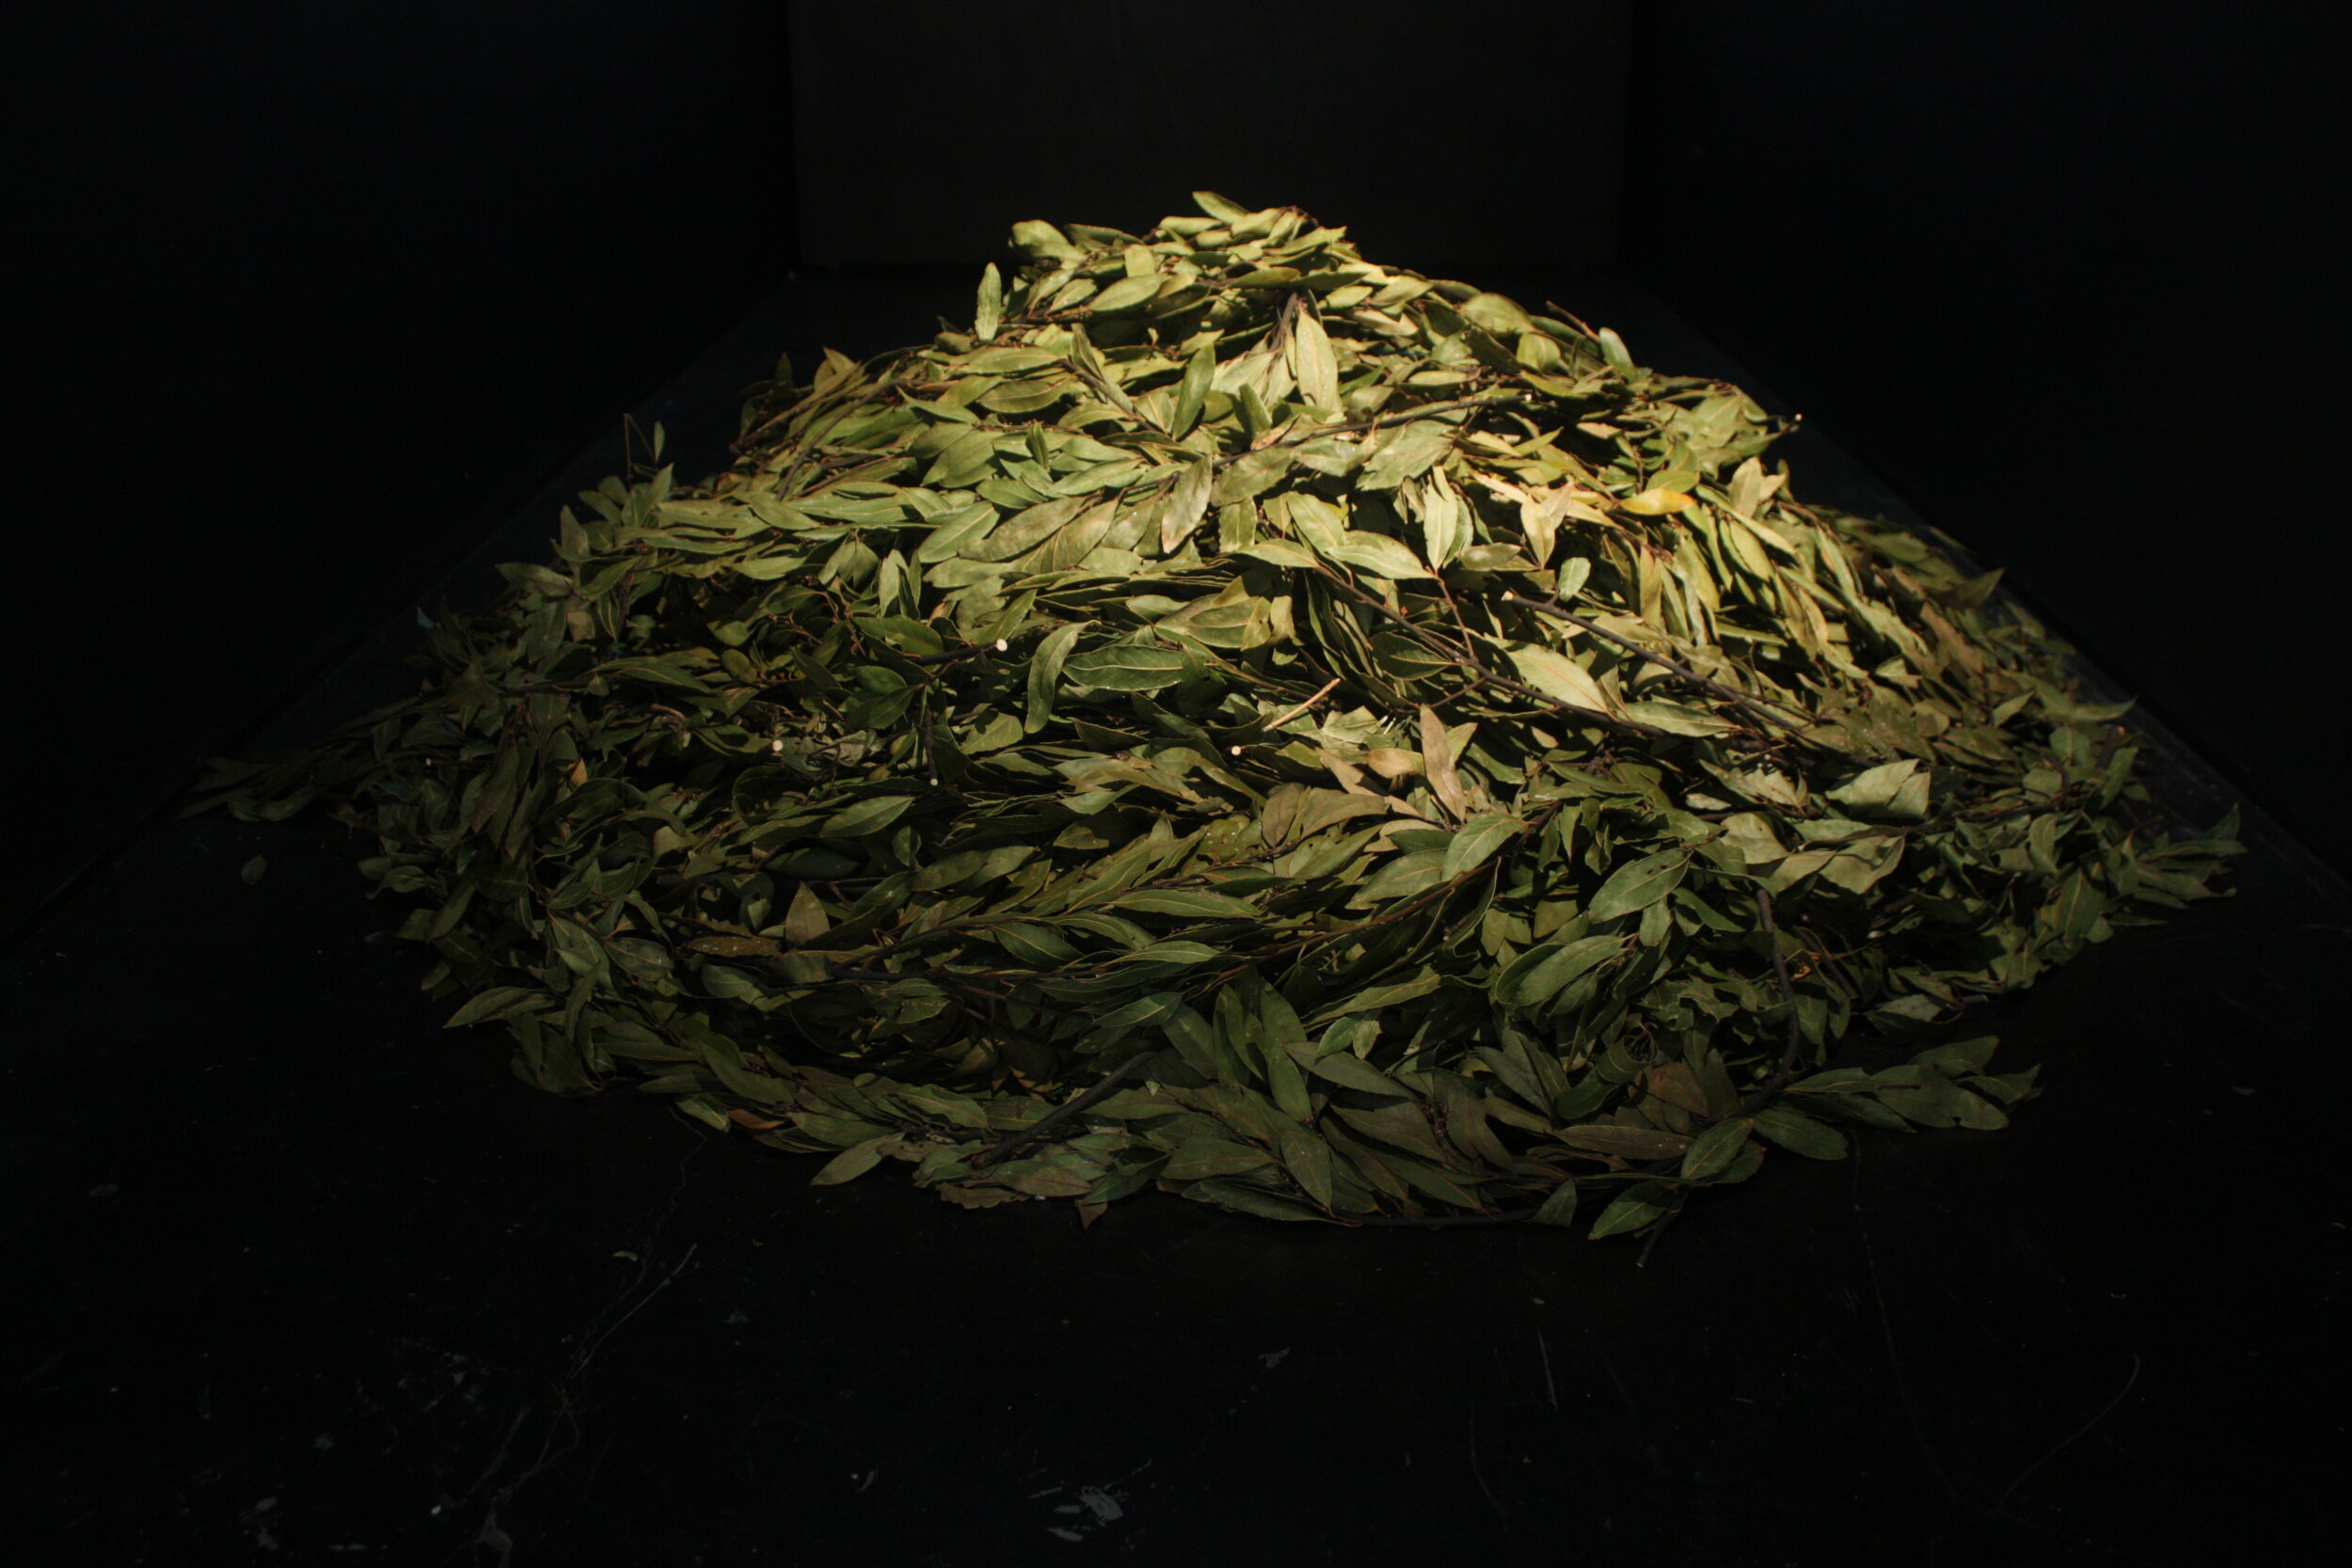    Bay laurel, Laurus nobilis   (detail), 2013  Material: bay laurel leaves. 